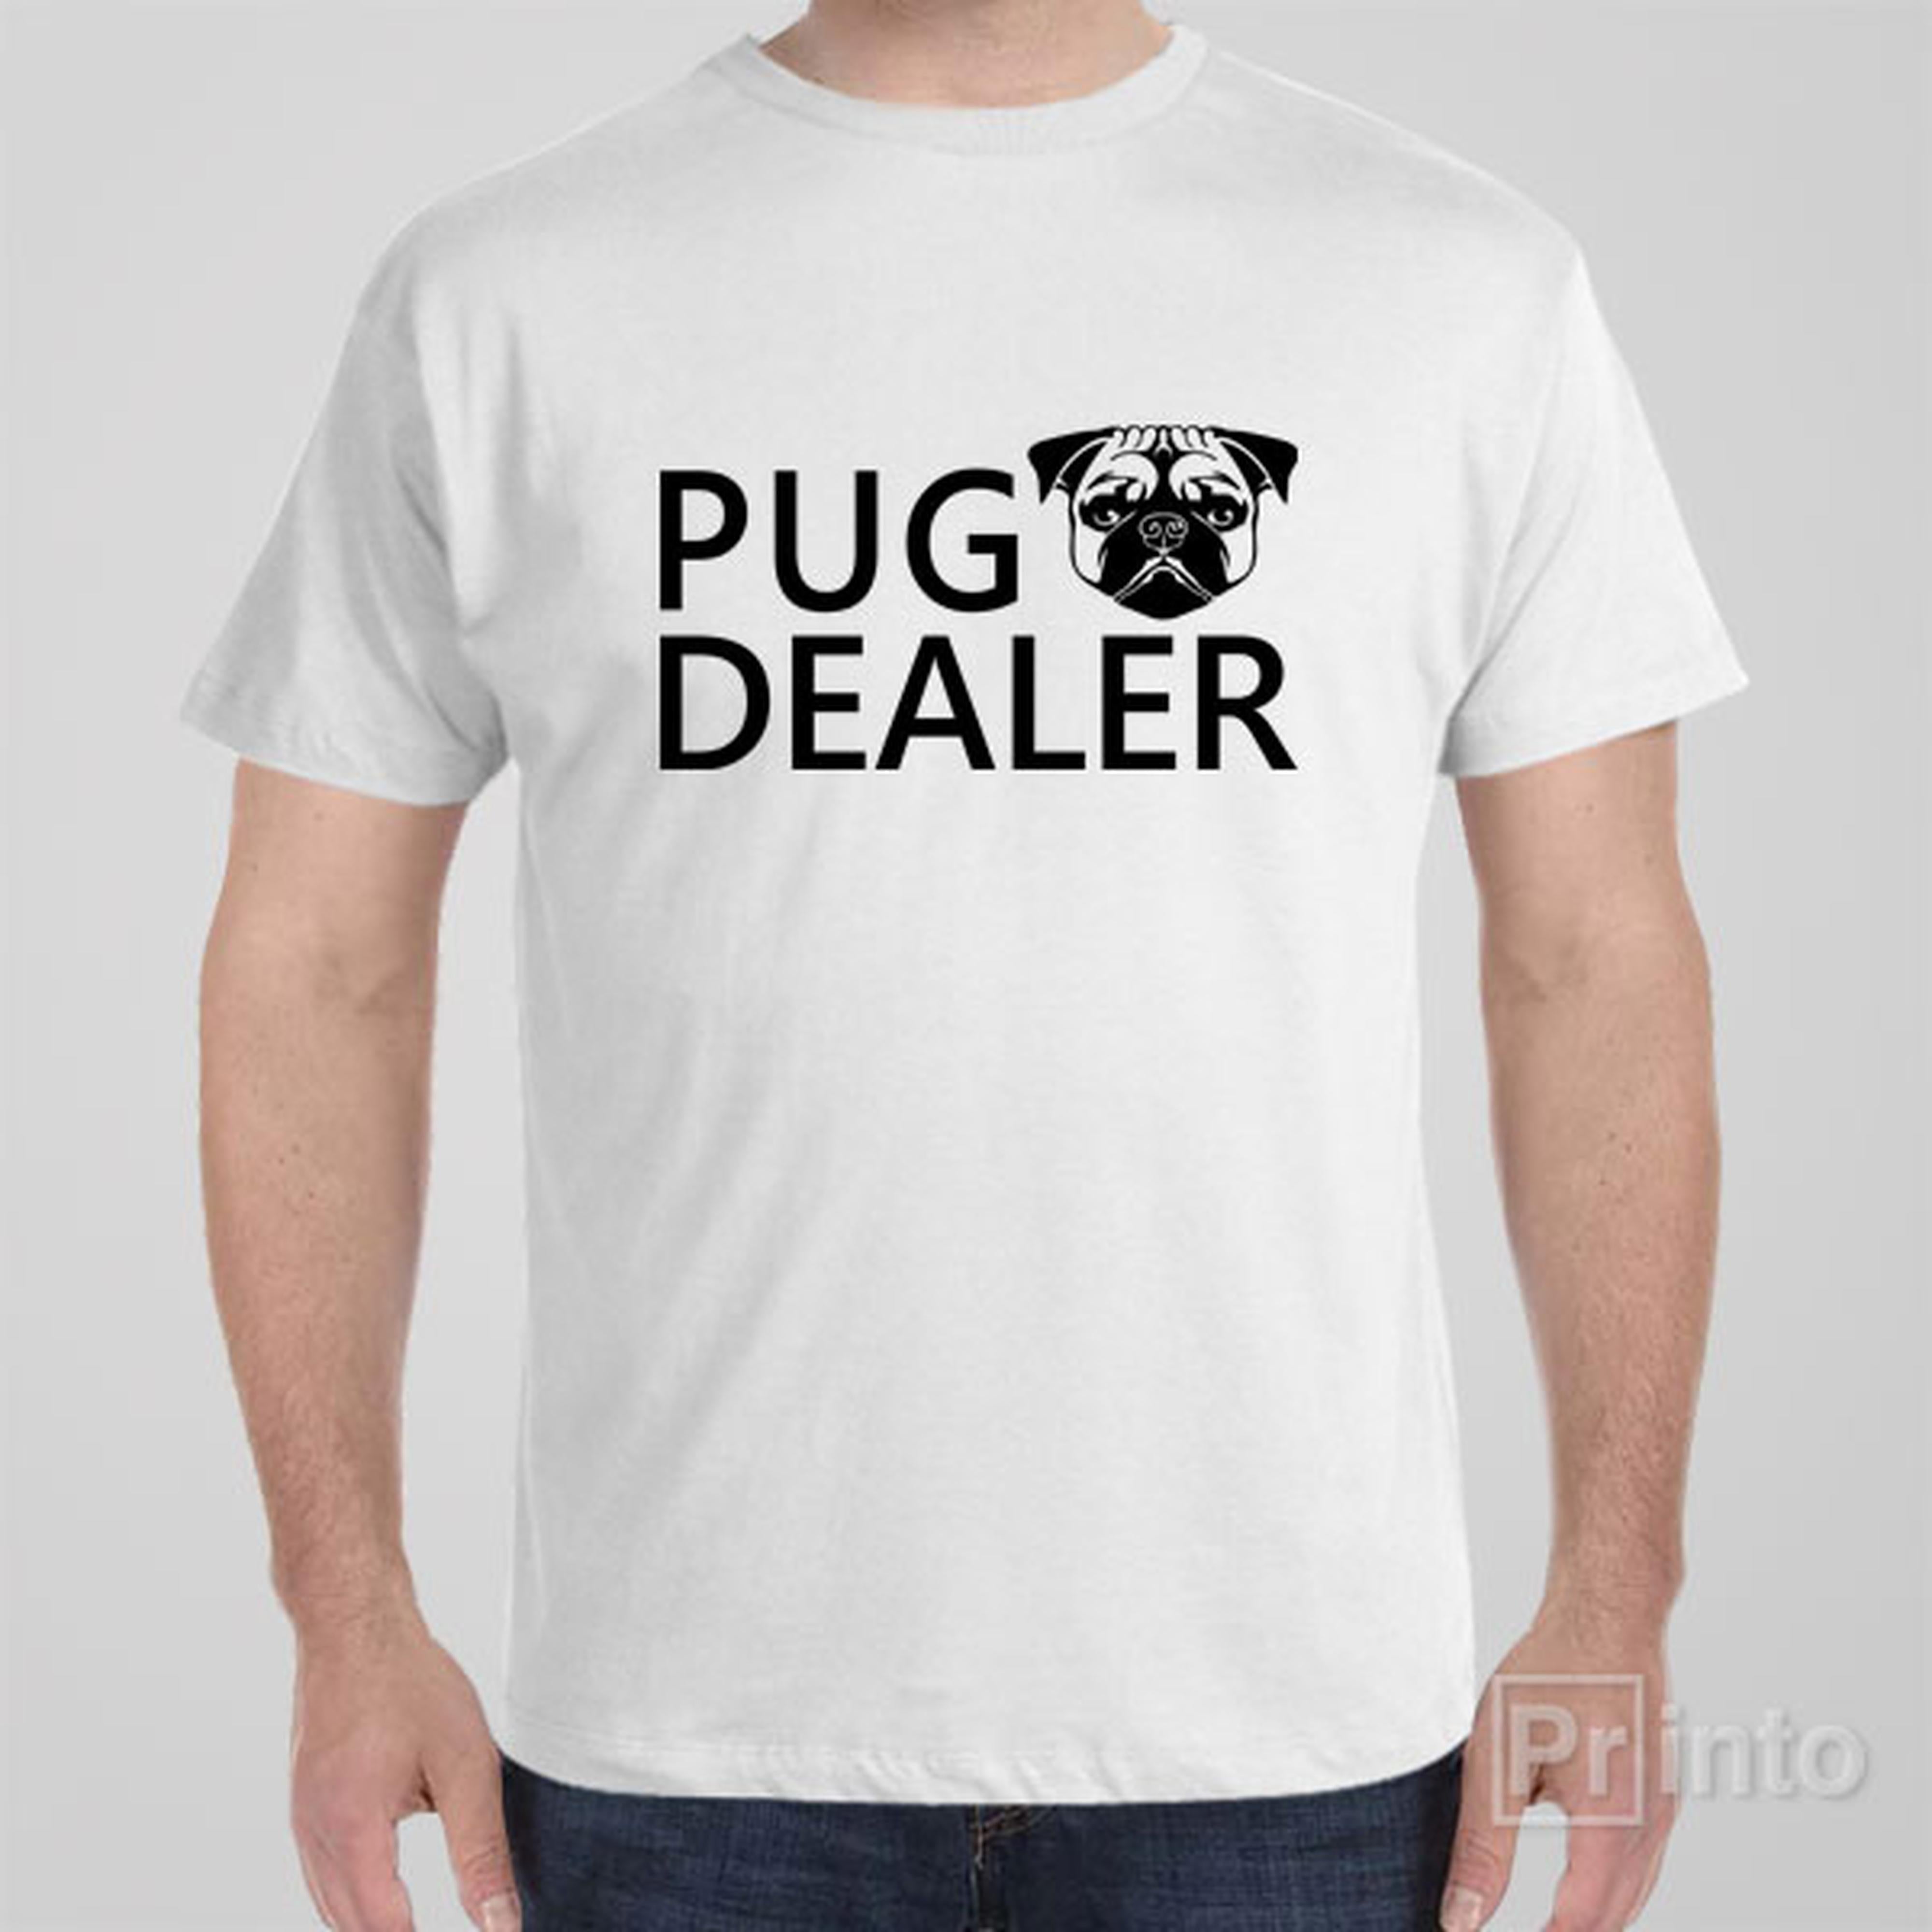 pug-dealer-t-shirt